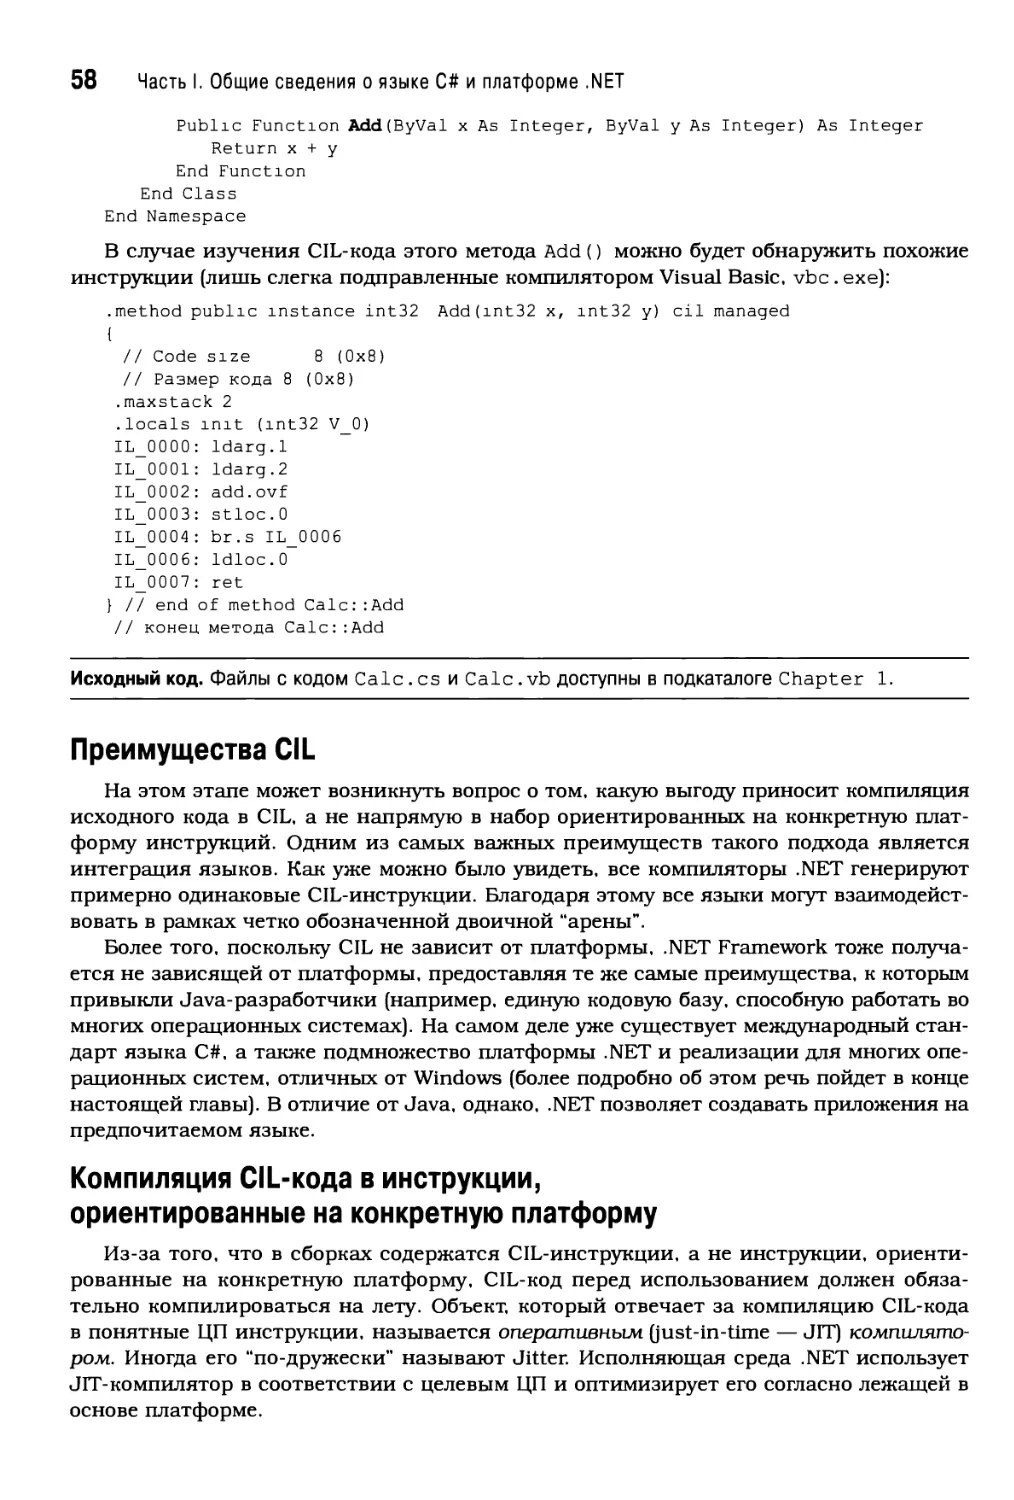 Преимущества CIL
Компиляция CIL-кода в инструкции, ориентированные на конкретную платформу